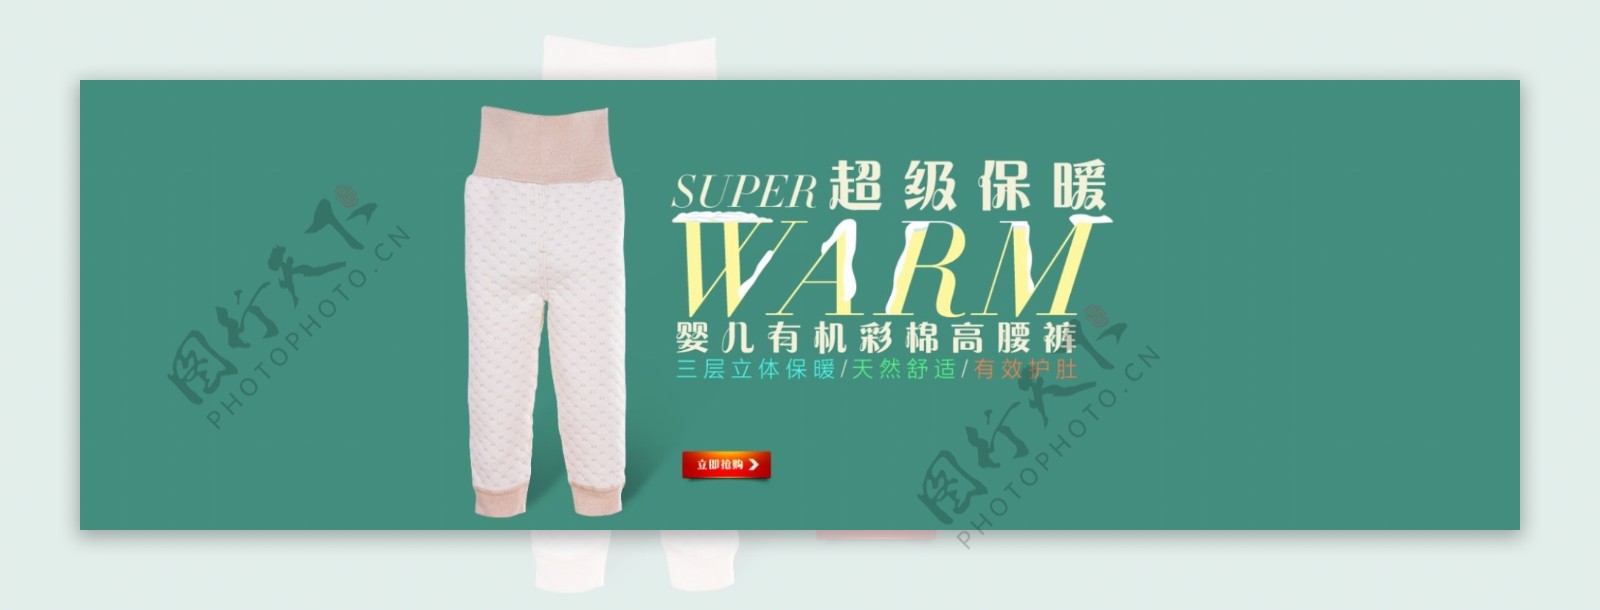 母婴婴儿冬季保暖彩棉护肚高腰裤首页海报